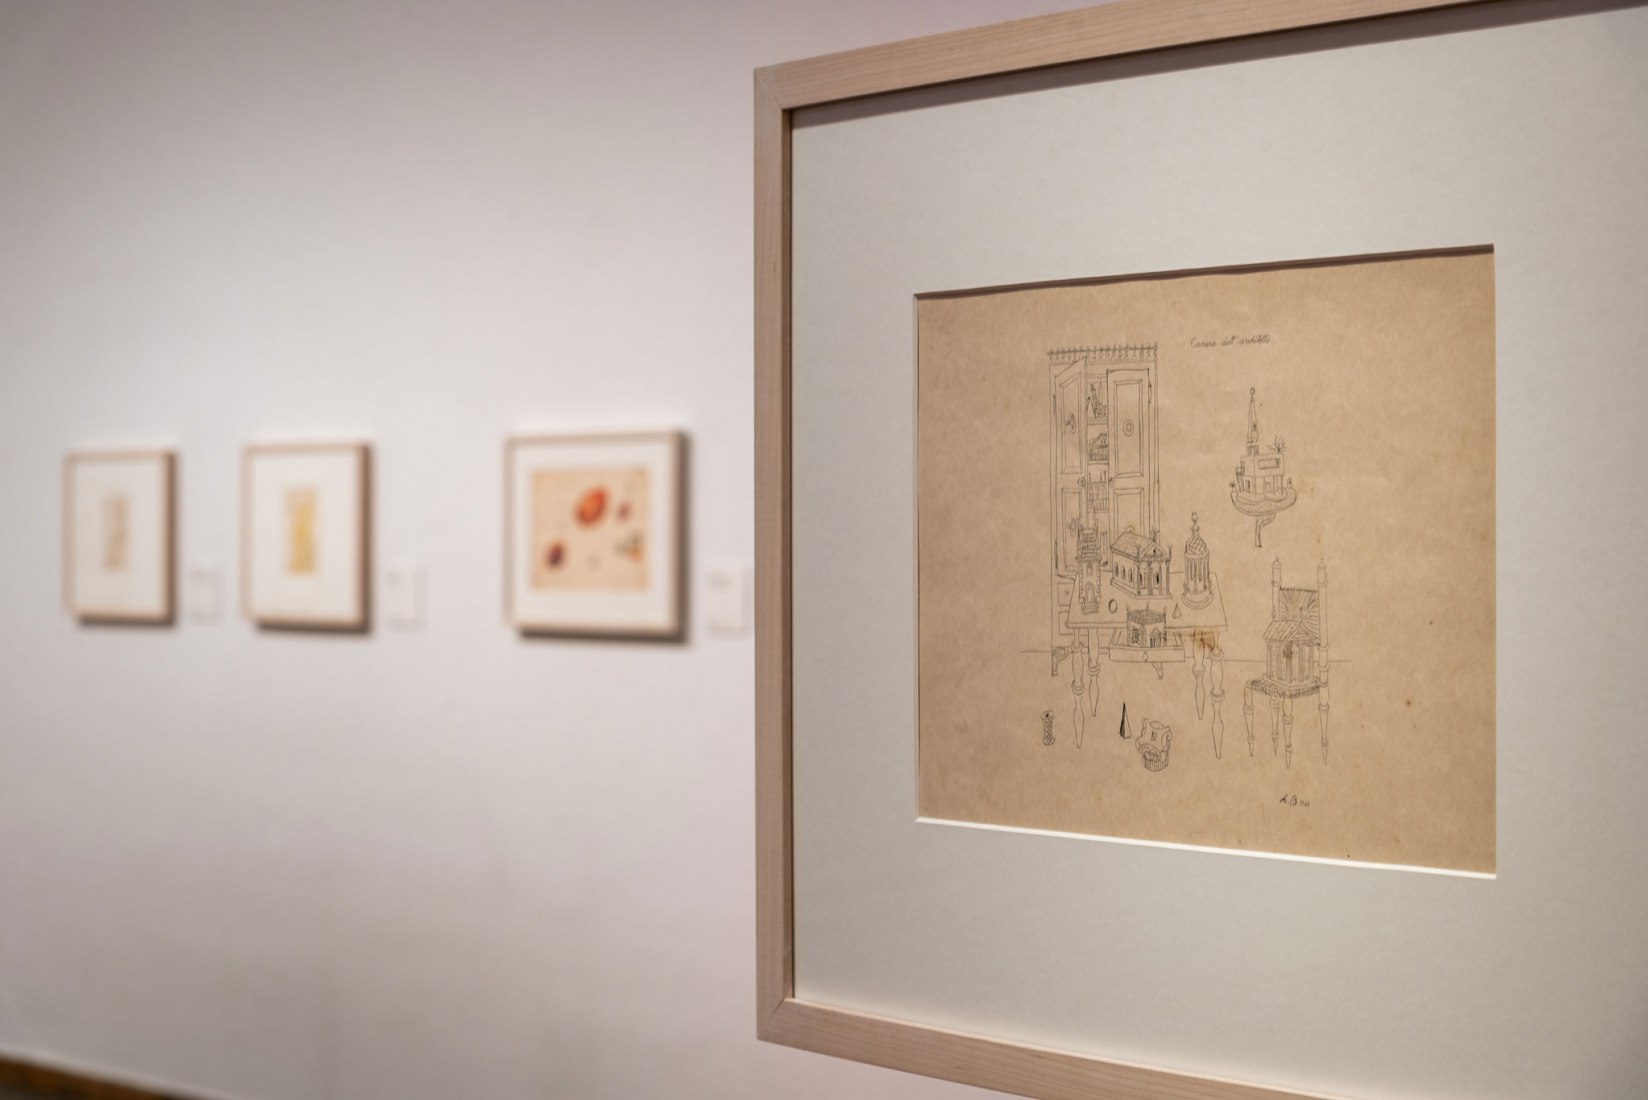 View of the installation Lina Bo Bardi Drawing in Fundació Joan Miró, 2019. Image courtesy of Fundació Joan Miró.